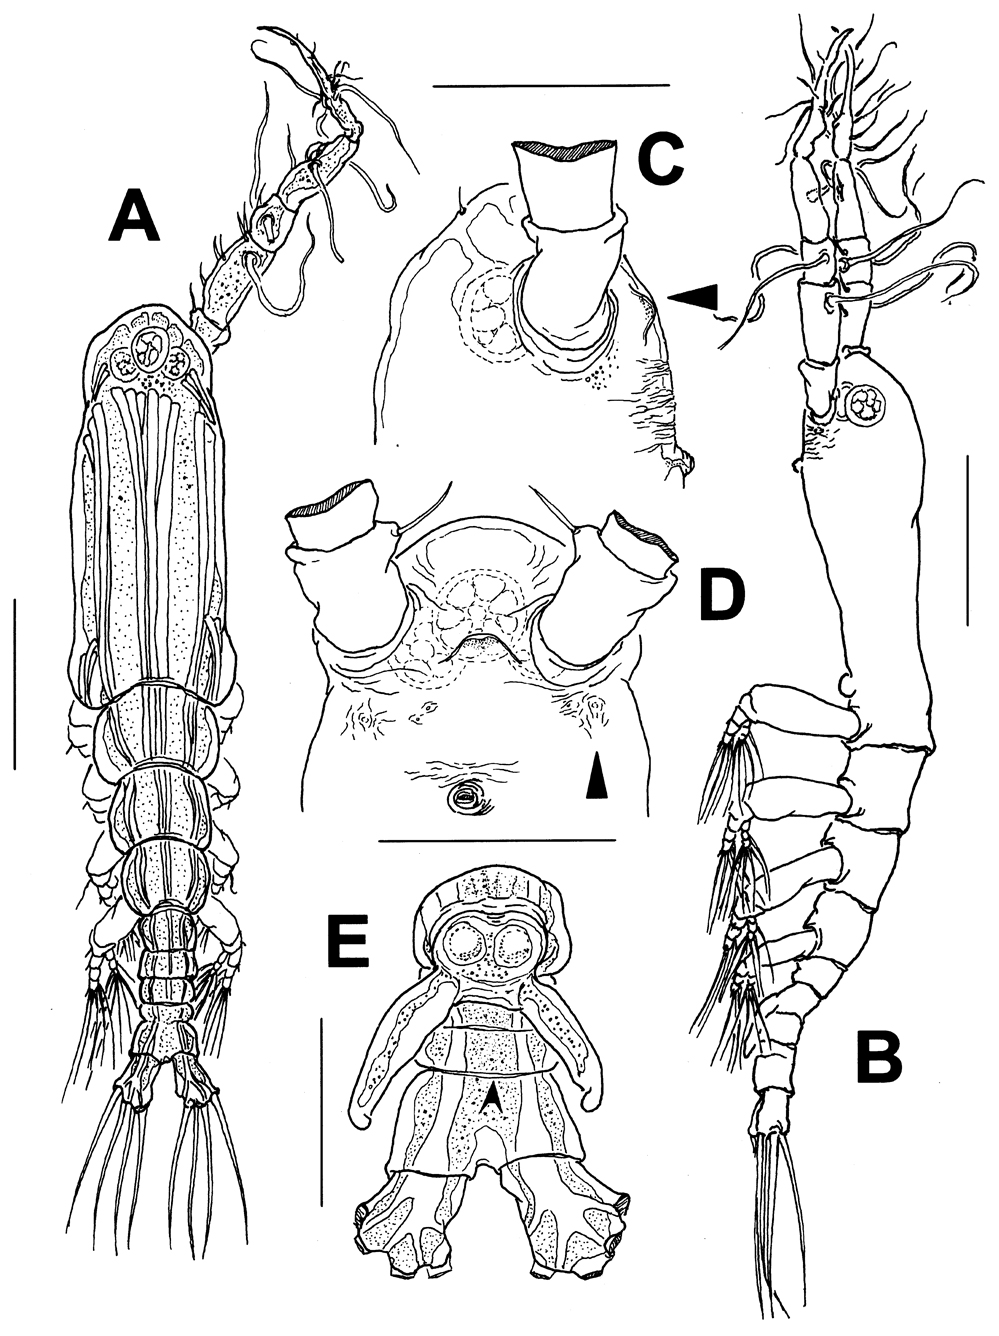 Espèce Monstrillopsis boonwurrungorum - Planche 1 de figures morphologiques